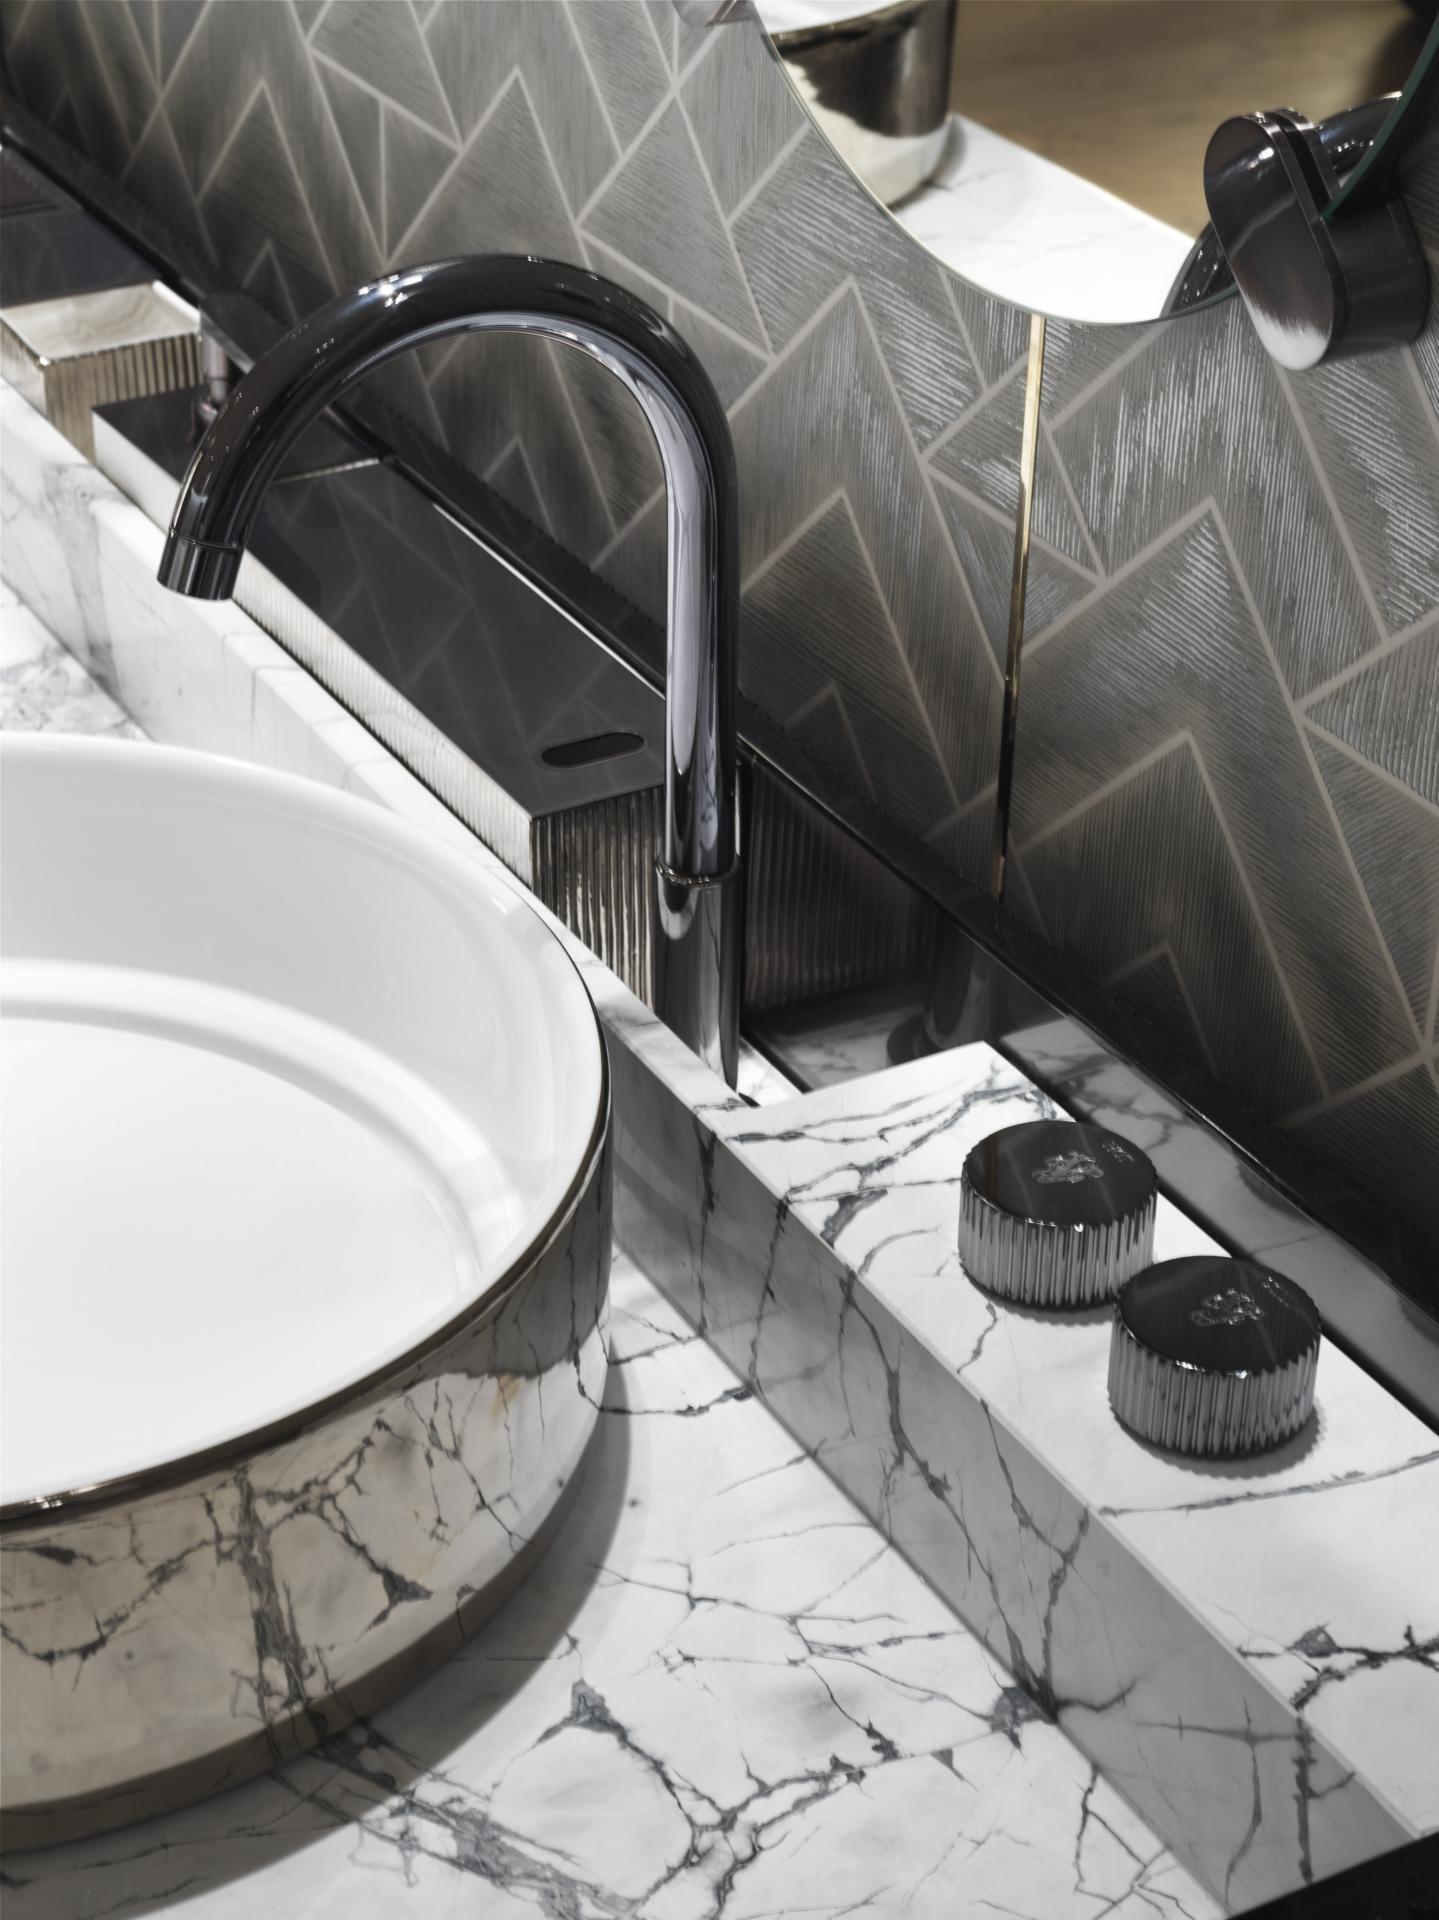 Ванная комната Kobol I, дизайн Visionnaire Home Philosophy